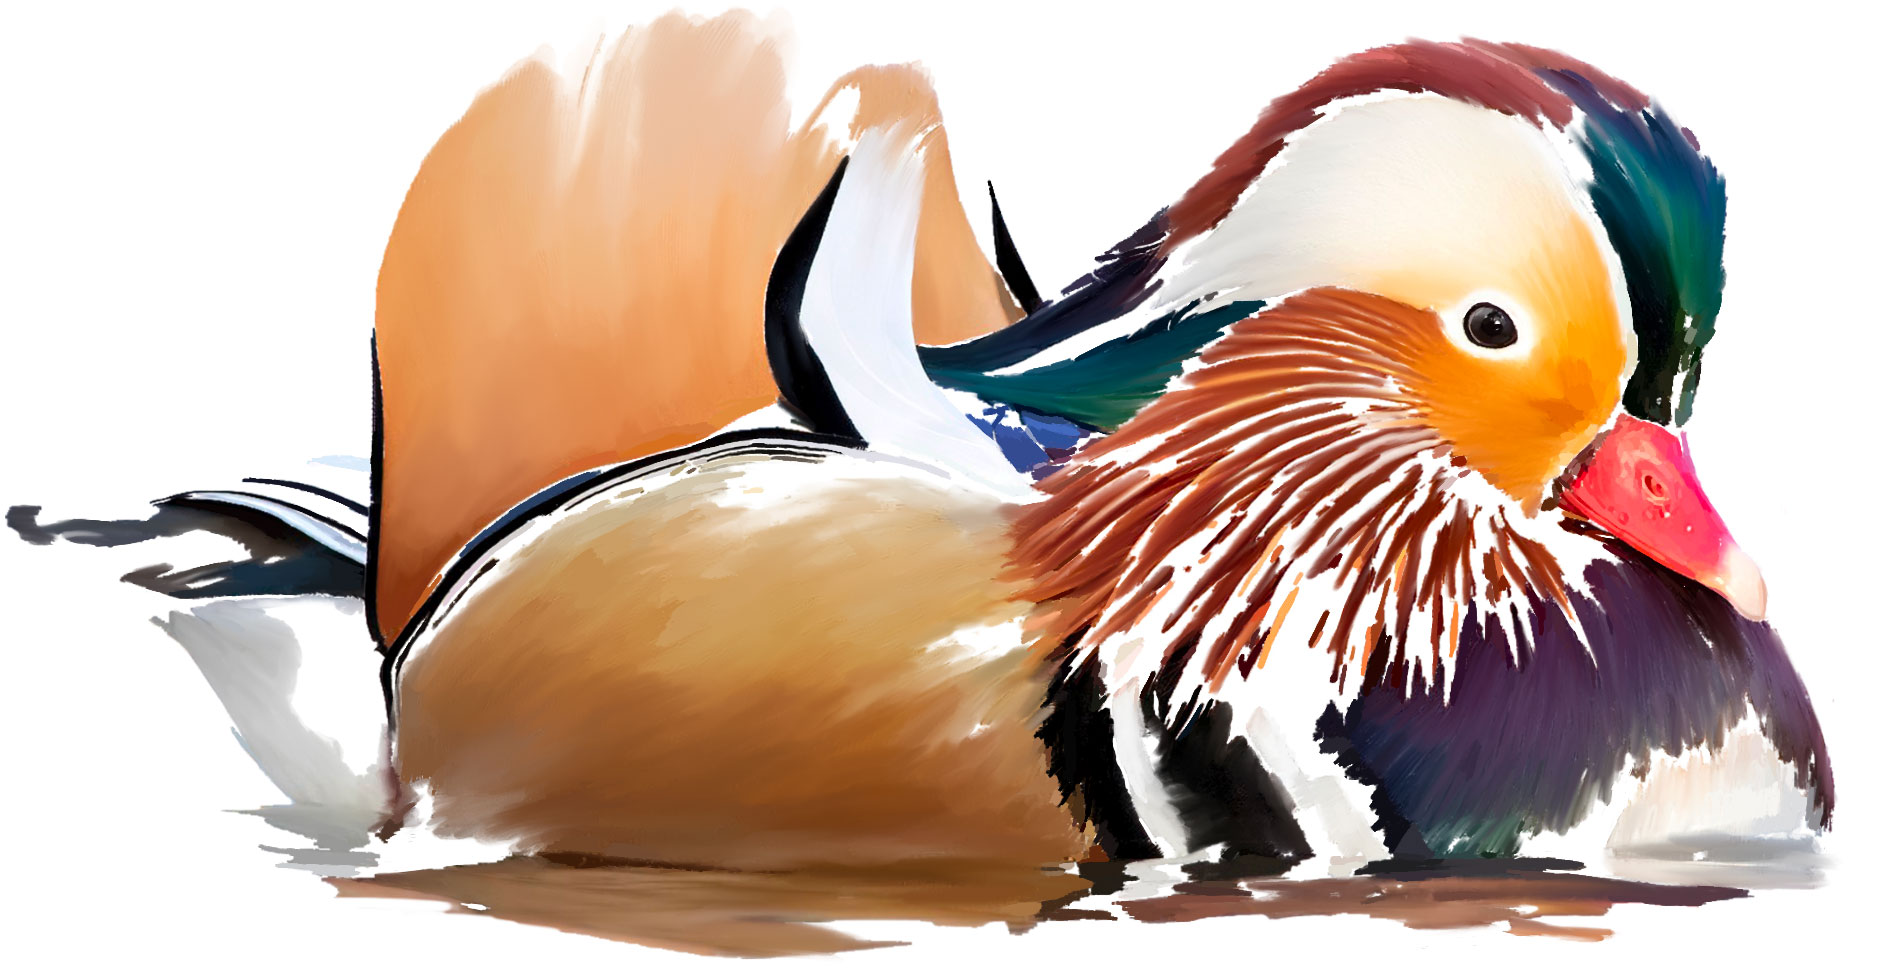 Painting of a Mandarin Duck bird